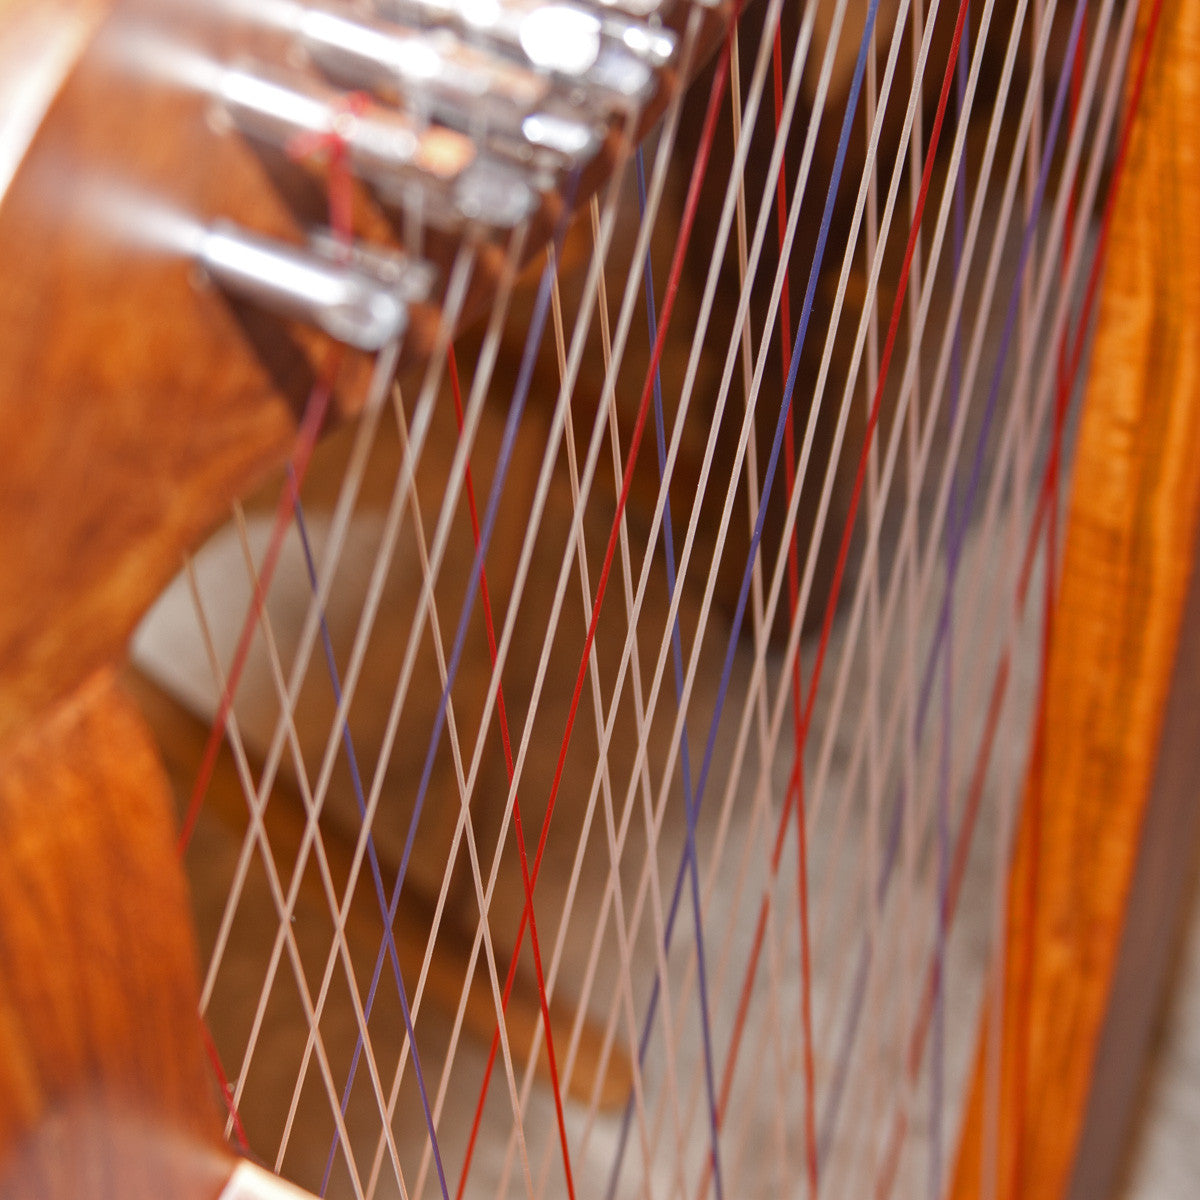 Roosebeck Caitlin Harp TM, Cross Strung Harp Harps Roosebeck   